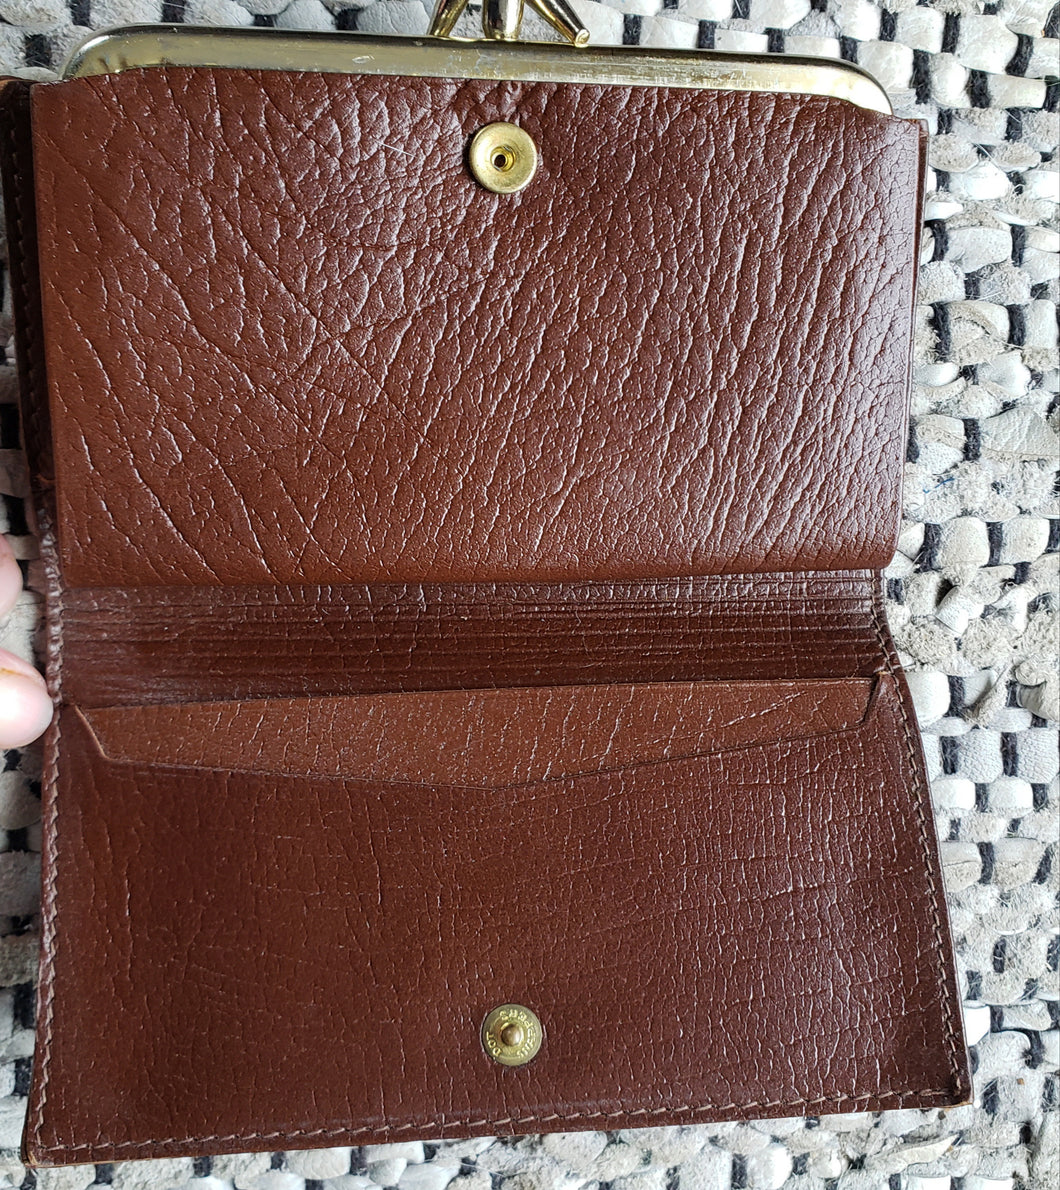 Kingspier Vintage - Vintage Legacy Leather clutch wallet.